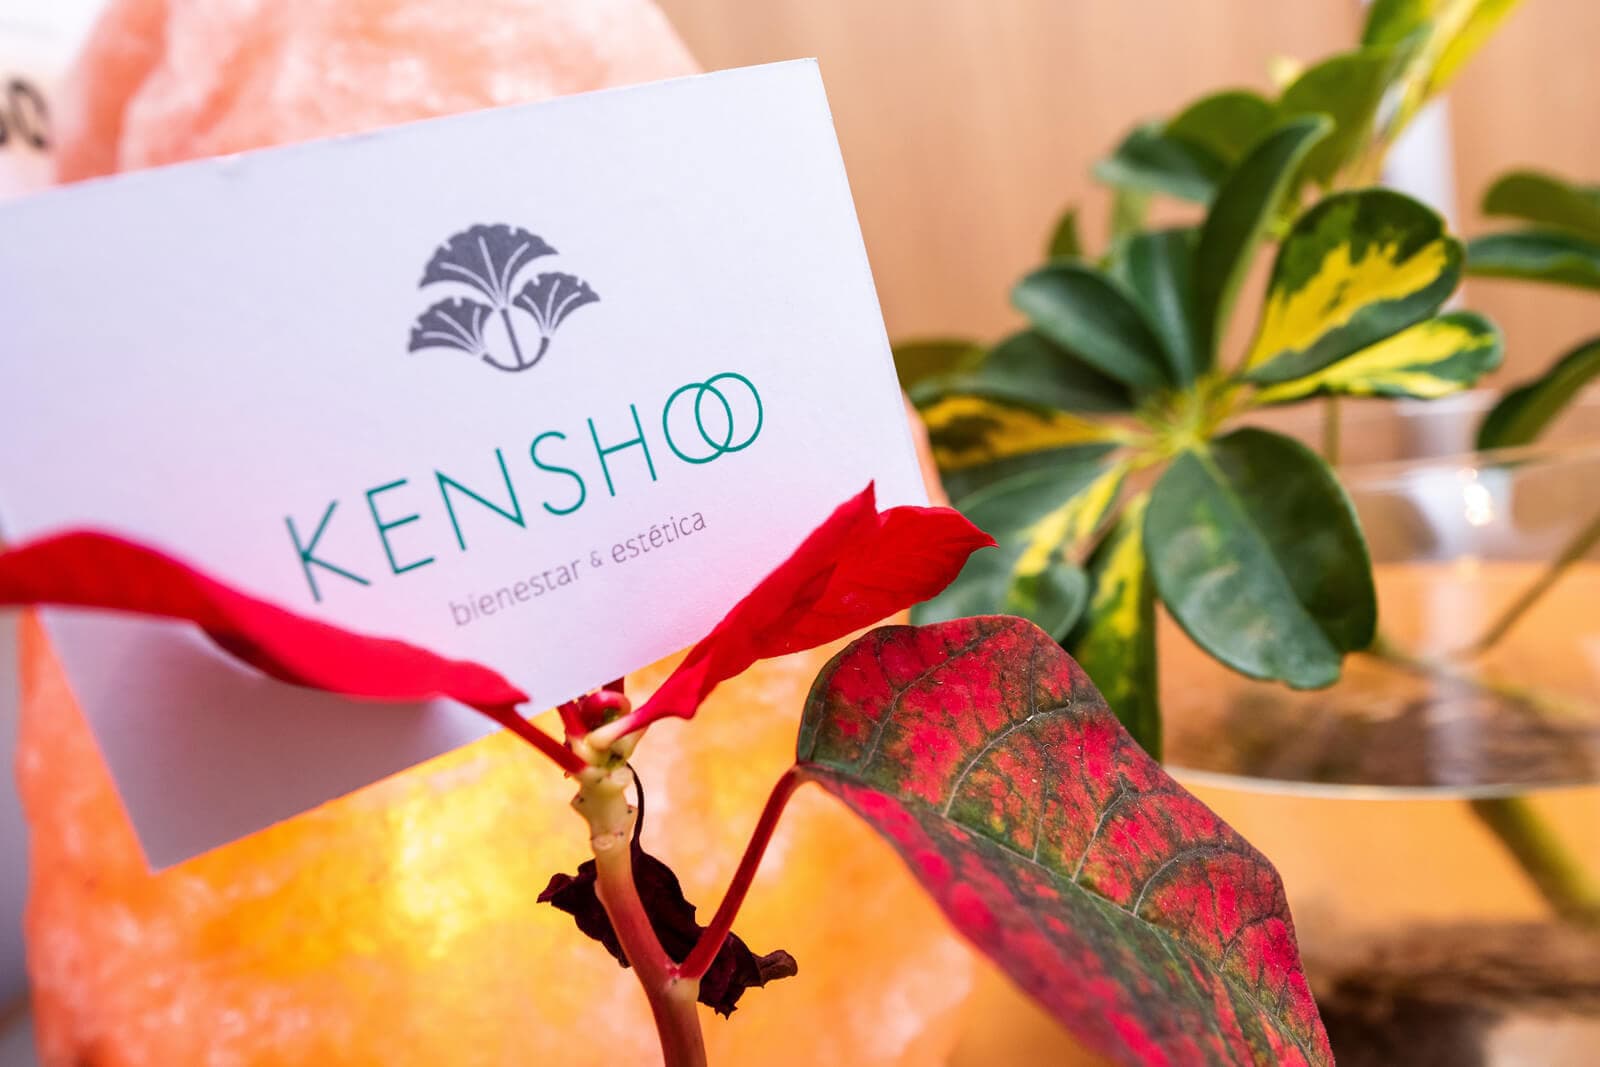 ¿Qué es Kensho?